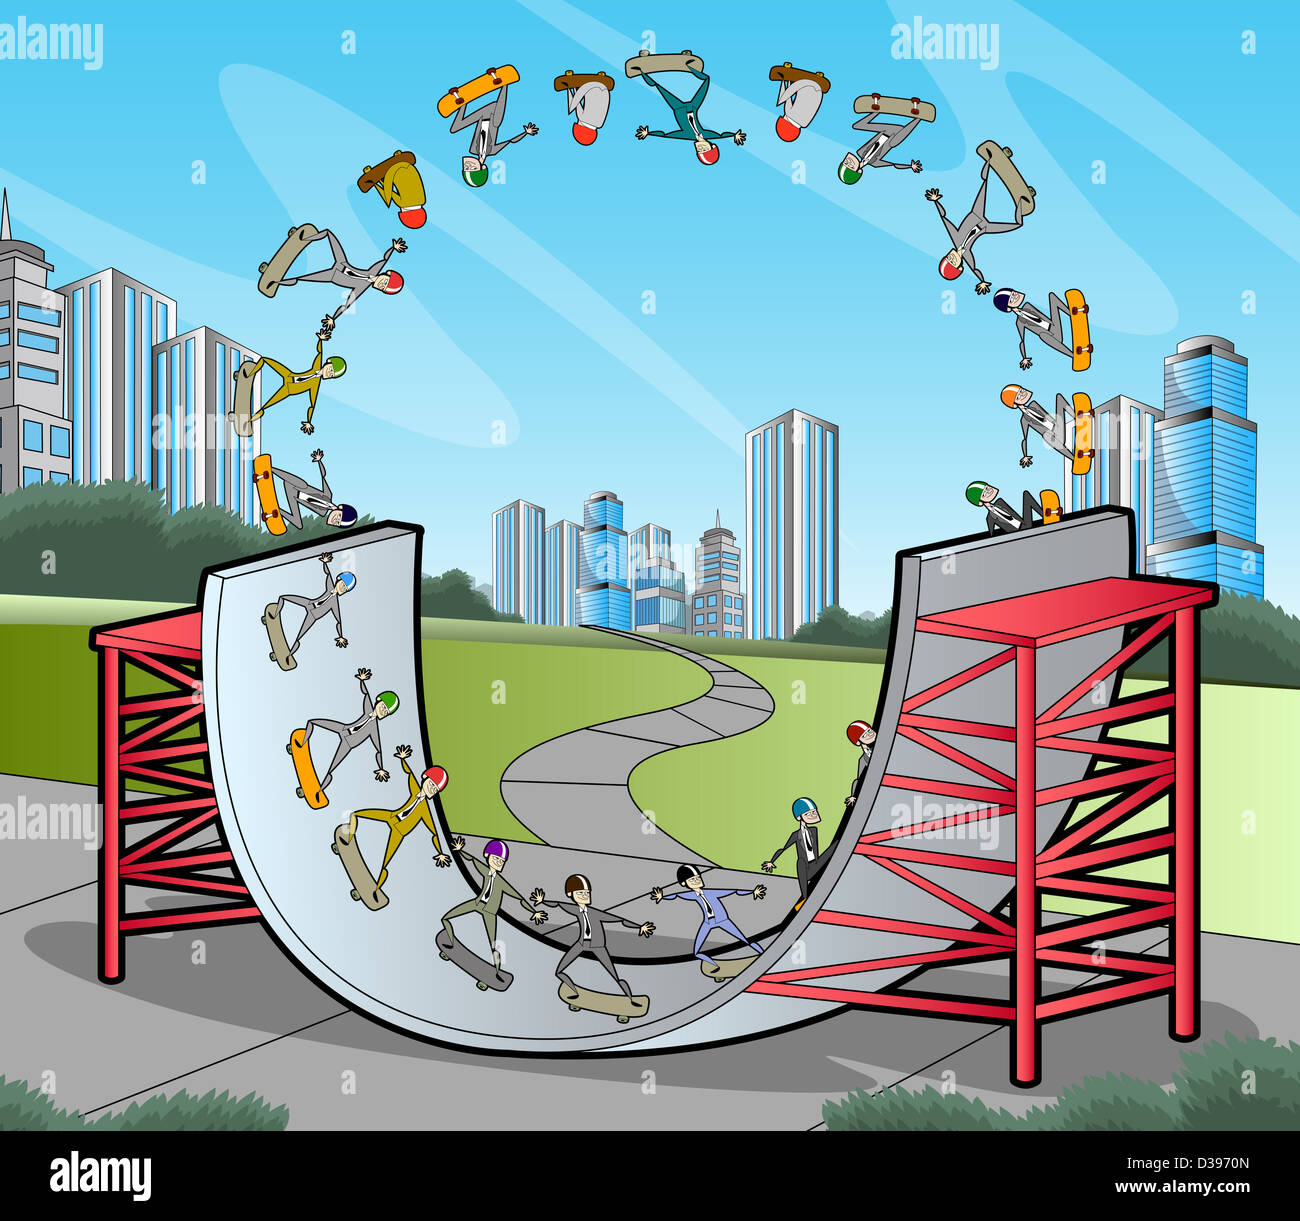 Anschauliches Bild von Geschäftsleuten, die Darstellung einer Unternehmenslebenszyklus zeigt Höhen und Tiefen in der Wirtschaft durch skateboarding Stockfoto